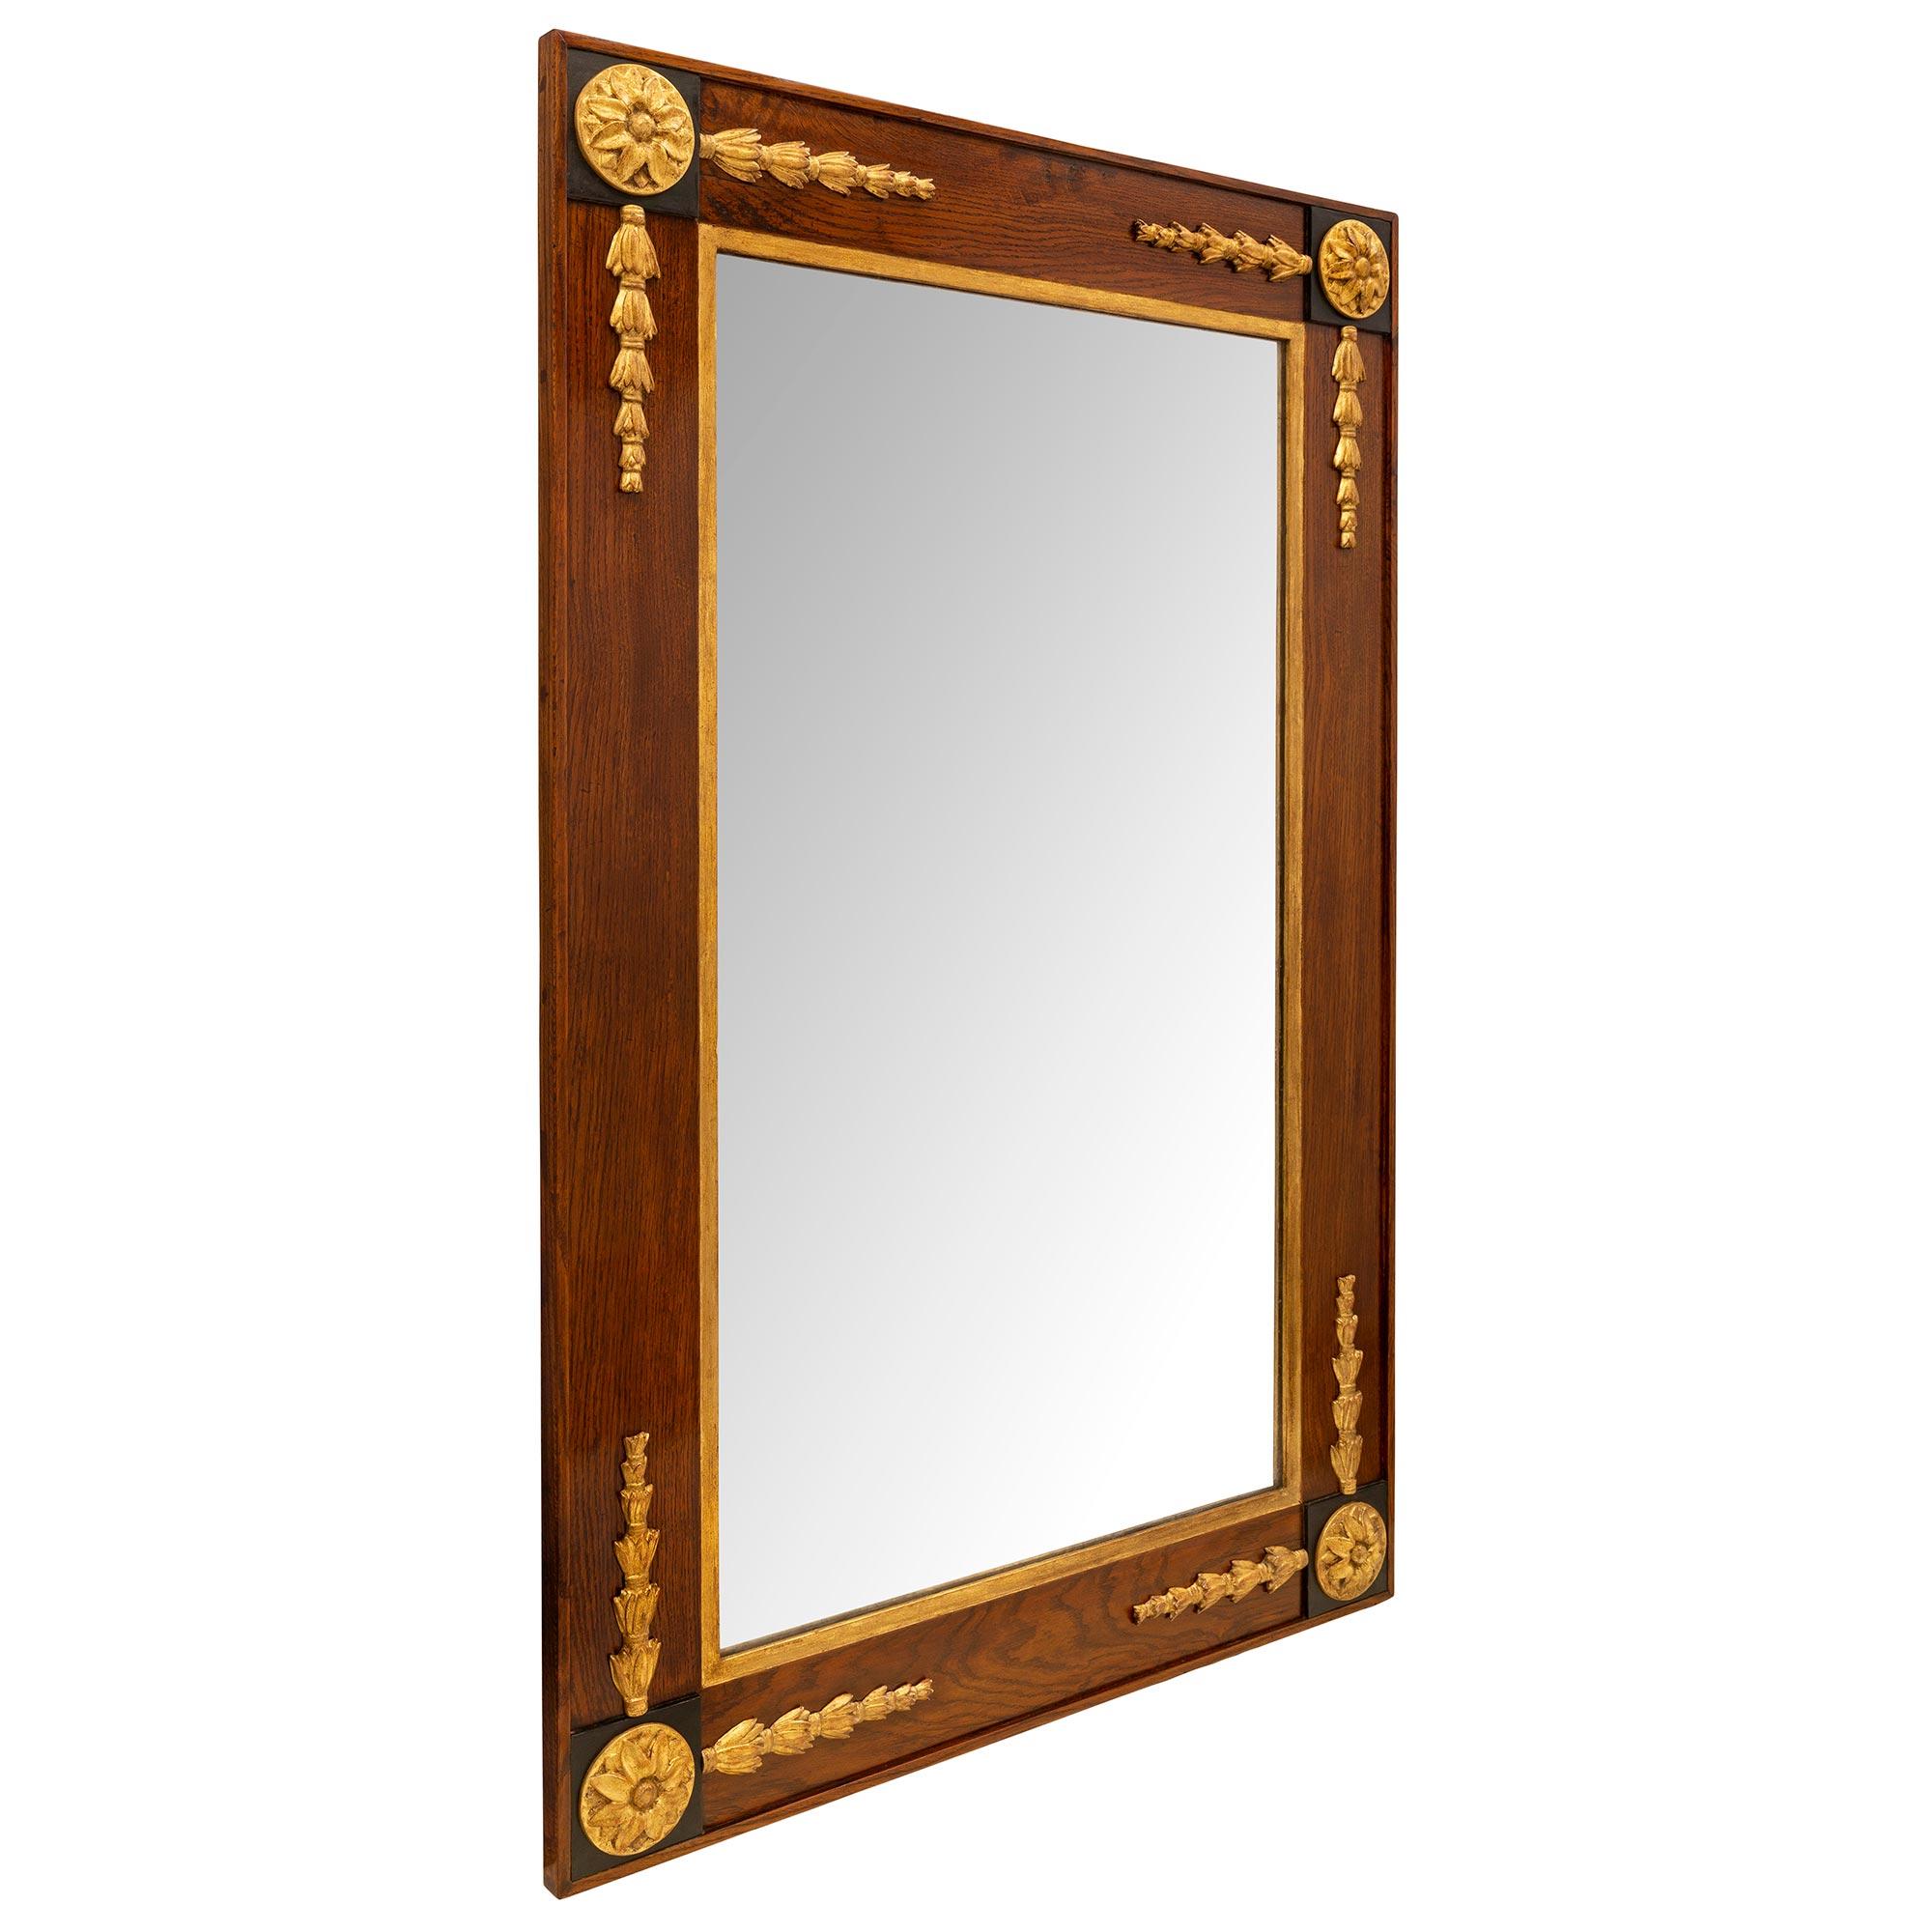 Un beau miroir italien du 18ème siècle, de style toscan, en noyer, bois fruitier ébénisé et bois doré. Le miroir central d'origine est entouré d'une fine bordure en bois doré et d'un magnifique cadre en noyer mettant en valeur le grain chaud du